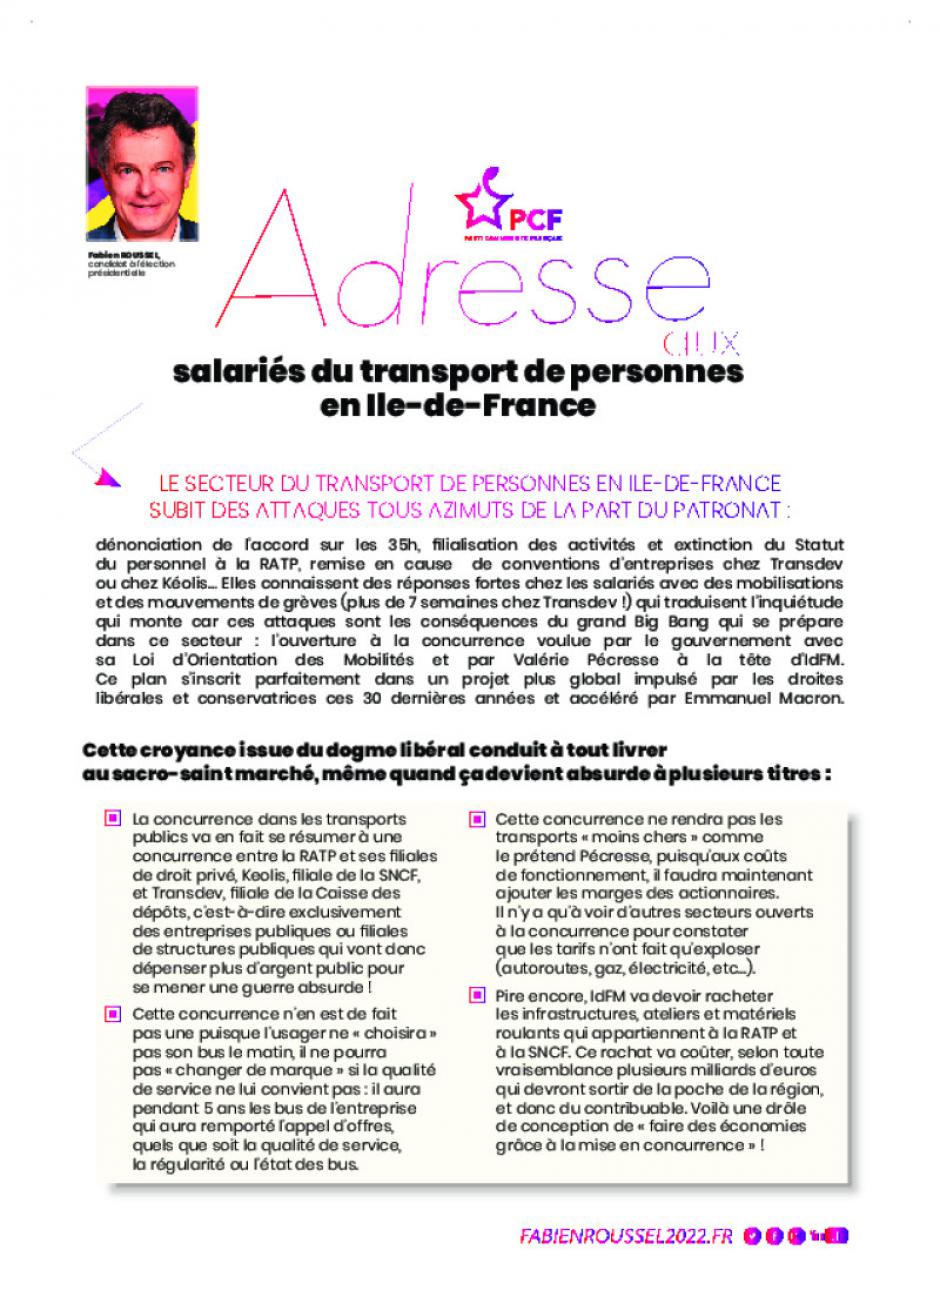 Adresse de Fabien Roussel aux salariés du transport de personnes en Ile-de-France